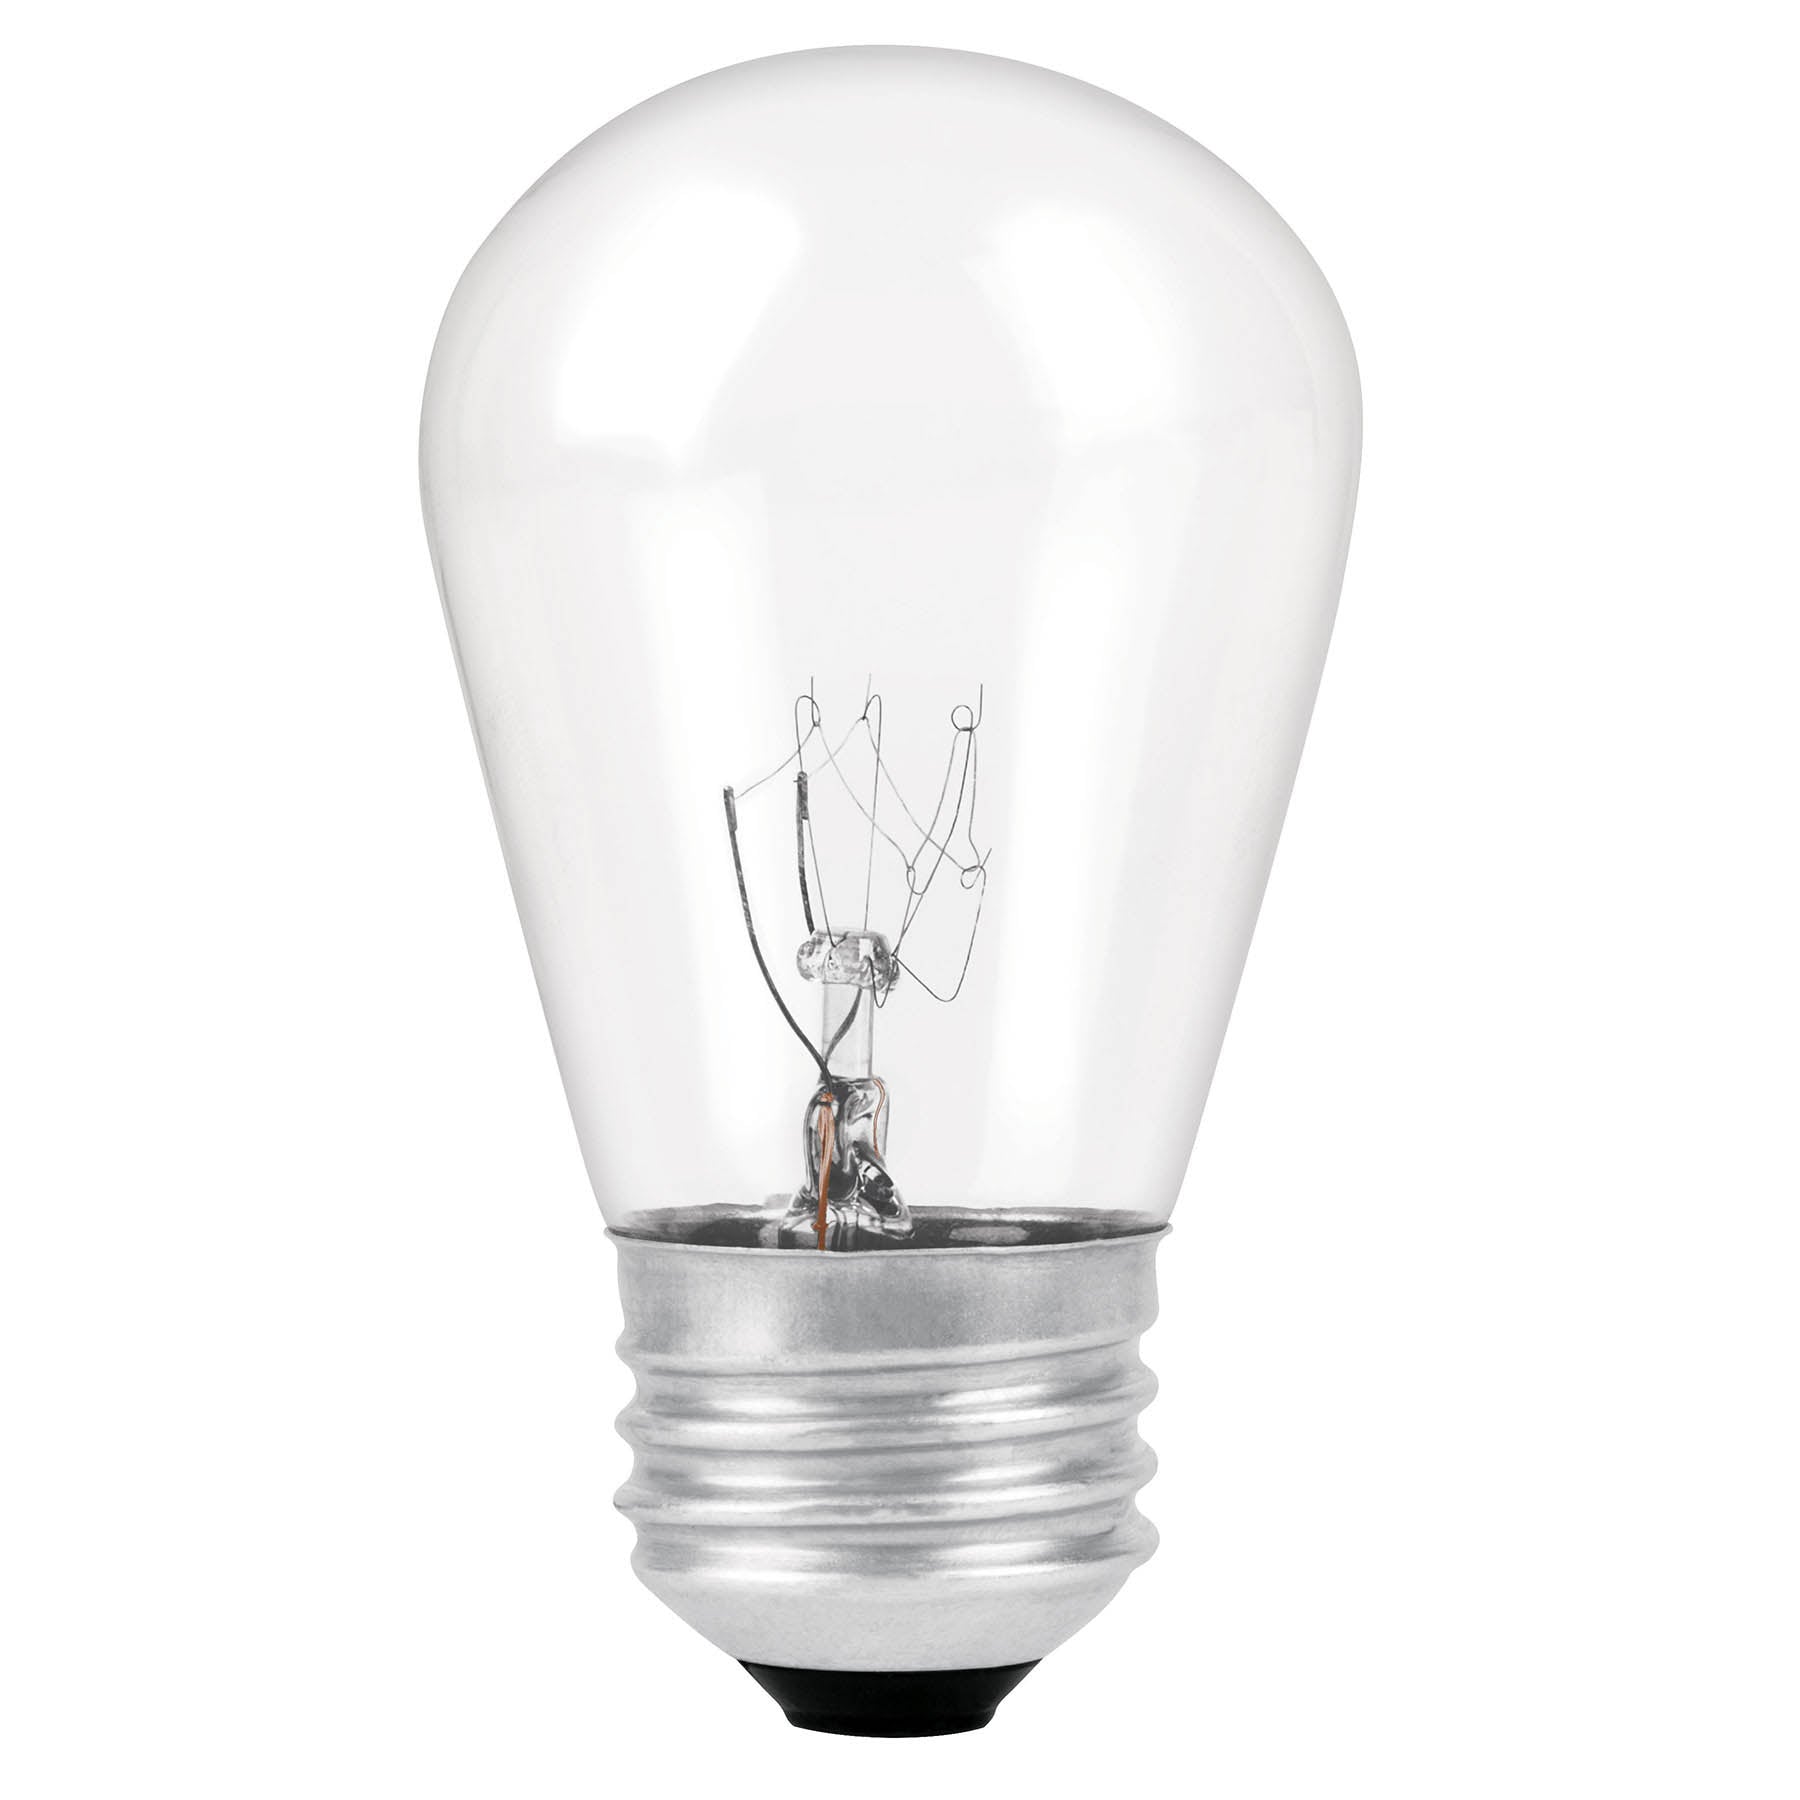 Lámpara incandescente S14, 11 W, para serie de luz, Volteck - FERRETERÍA WITZI